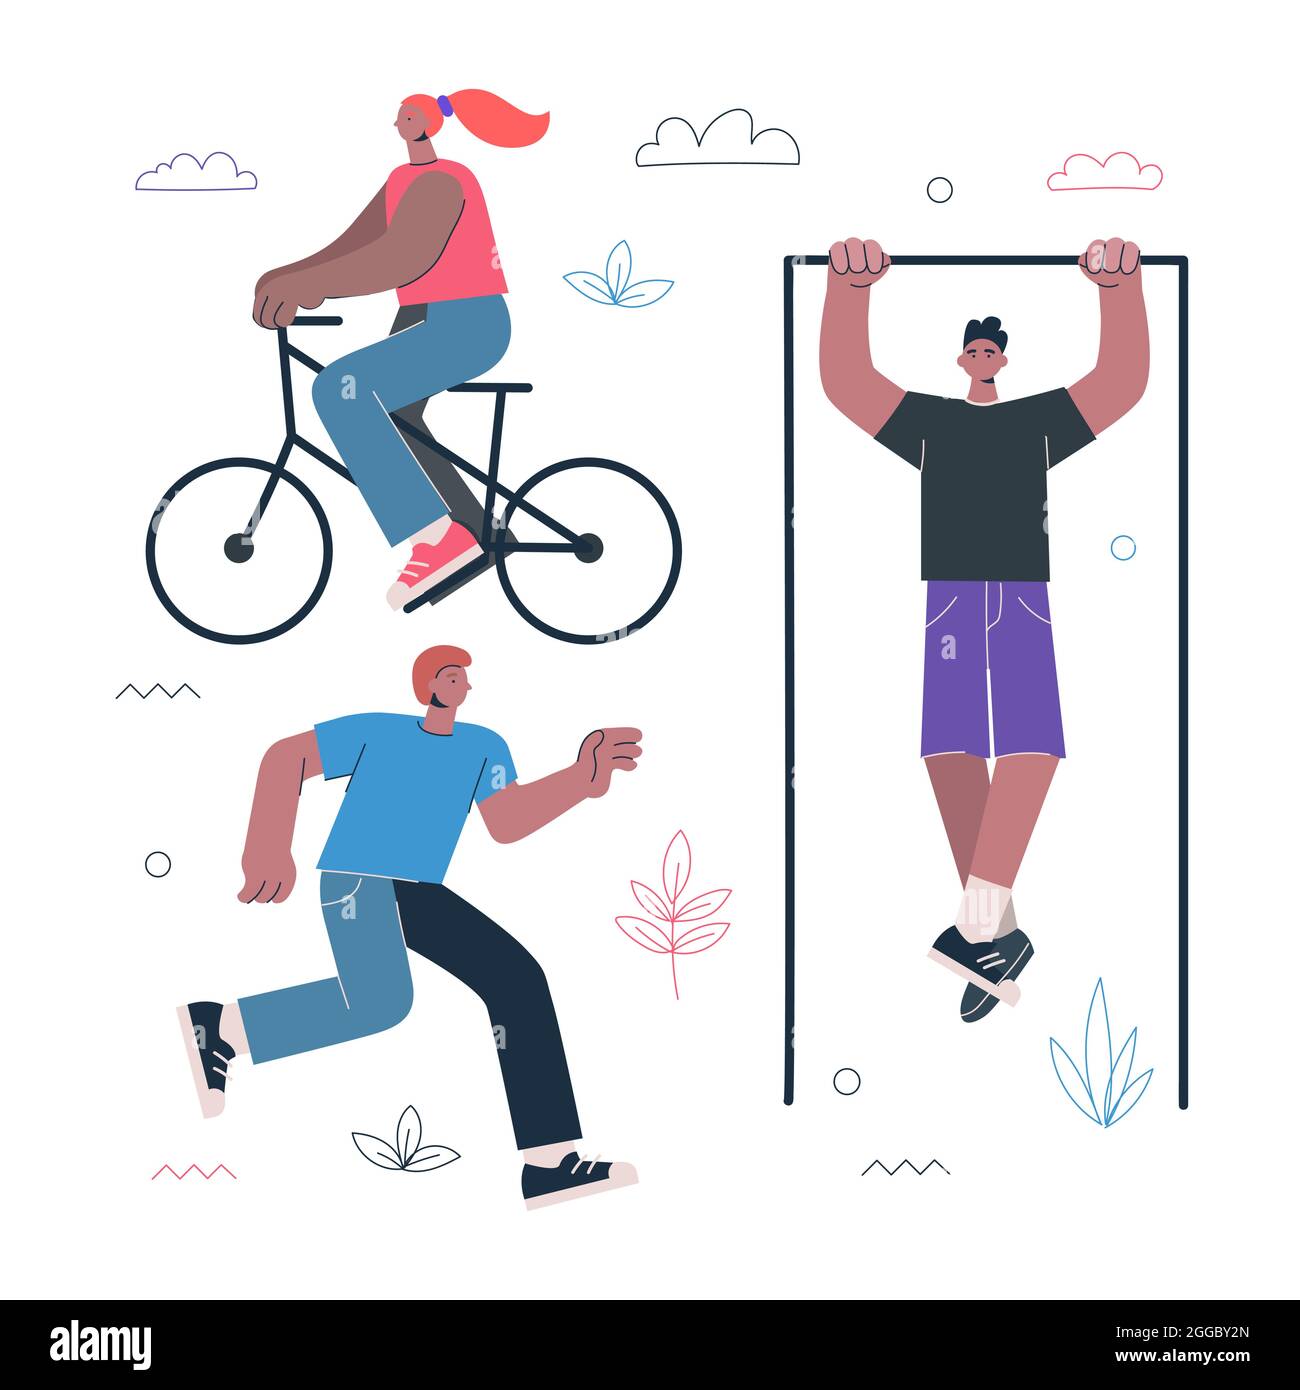 Gesundes Lifestyle Fitness und Street Workout Sport-Übungen Konzept. Personen fahren Fahrrad, laufen und ziehen sich auf der horizontalen Stange. Mann und Frau arbeiten-out-Vektor-eps-Illustration Stock Vektor